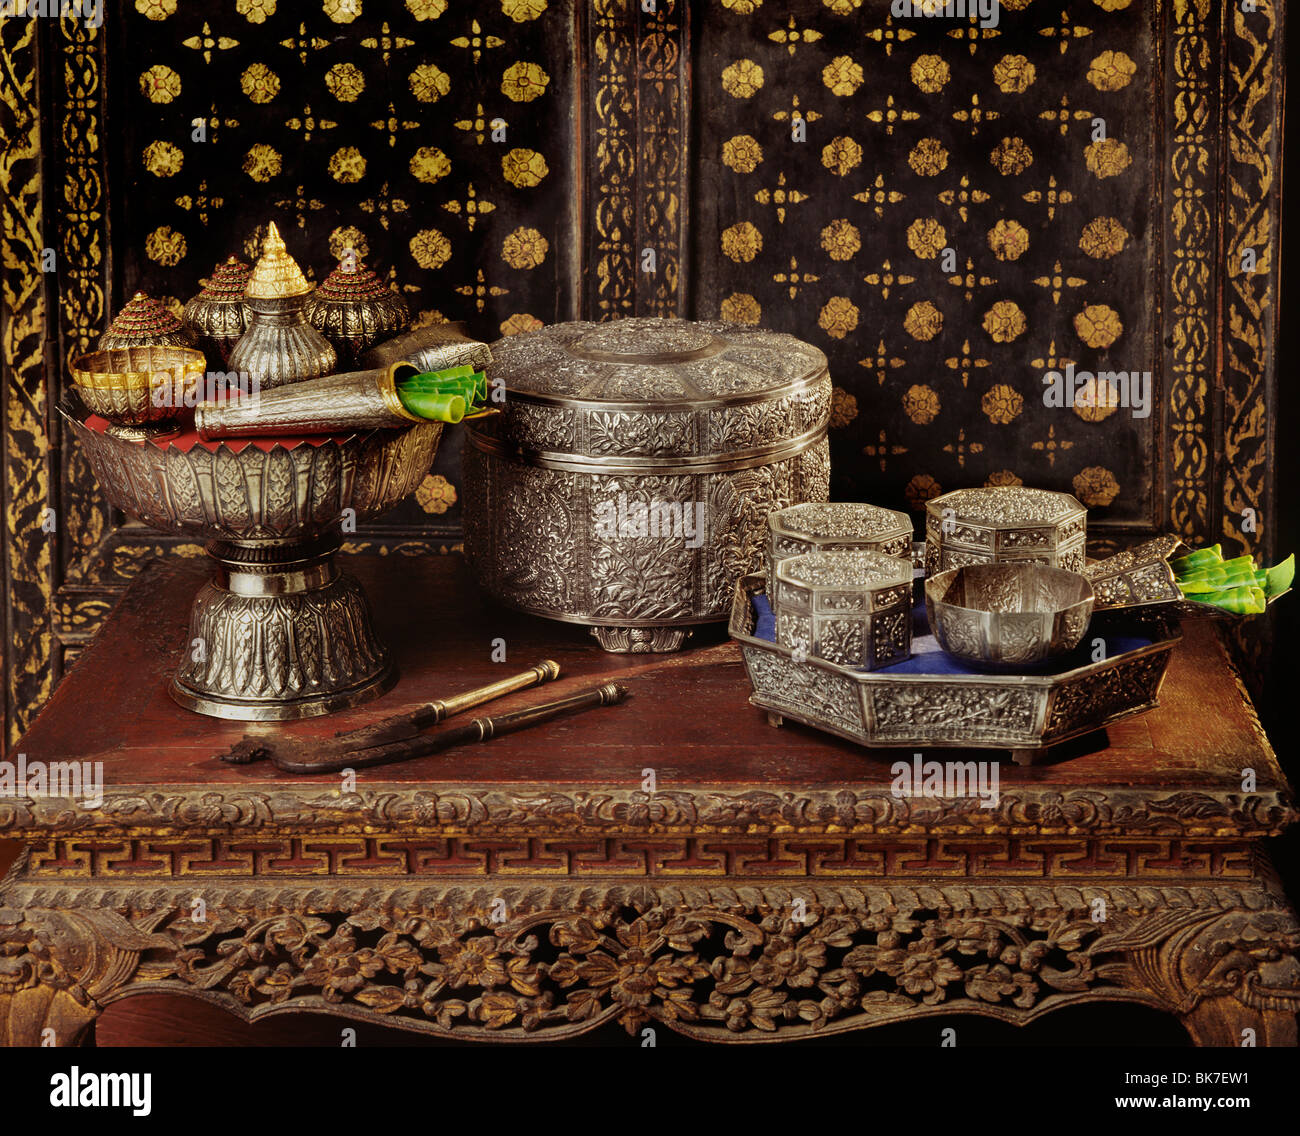 Finemente predisposto vassoi d'argento e i contenitori usati per betel-dado in Thailandia, Asia sud-orientale, Asia Foto Stock